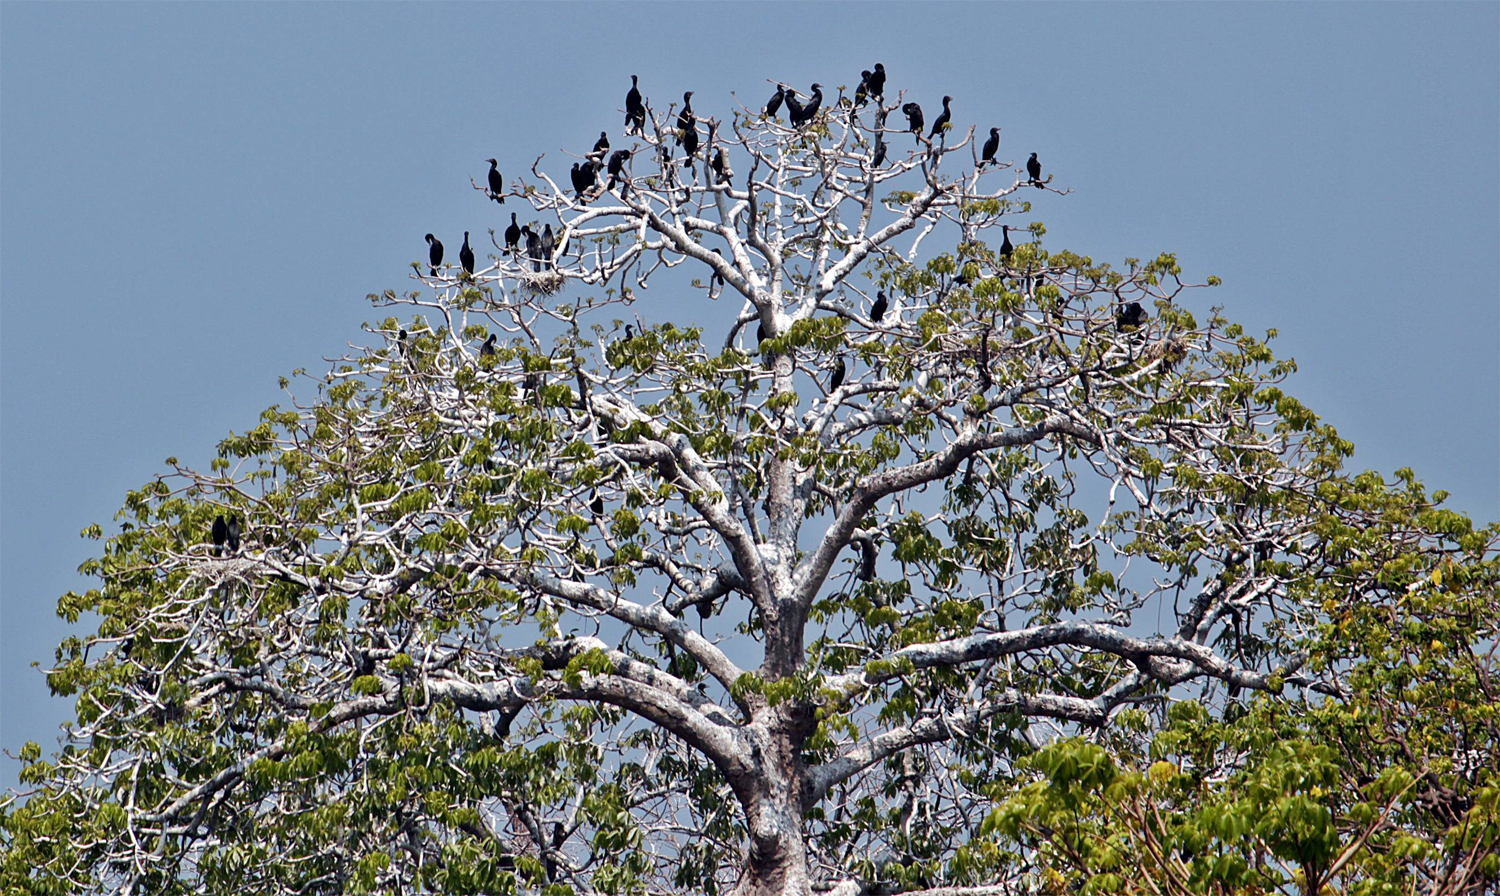 Pulau Rambut Menikmati burung di alam liar OM KICAU